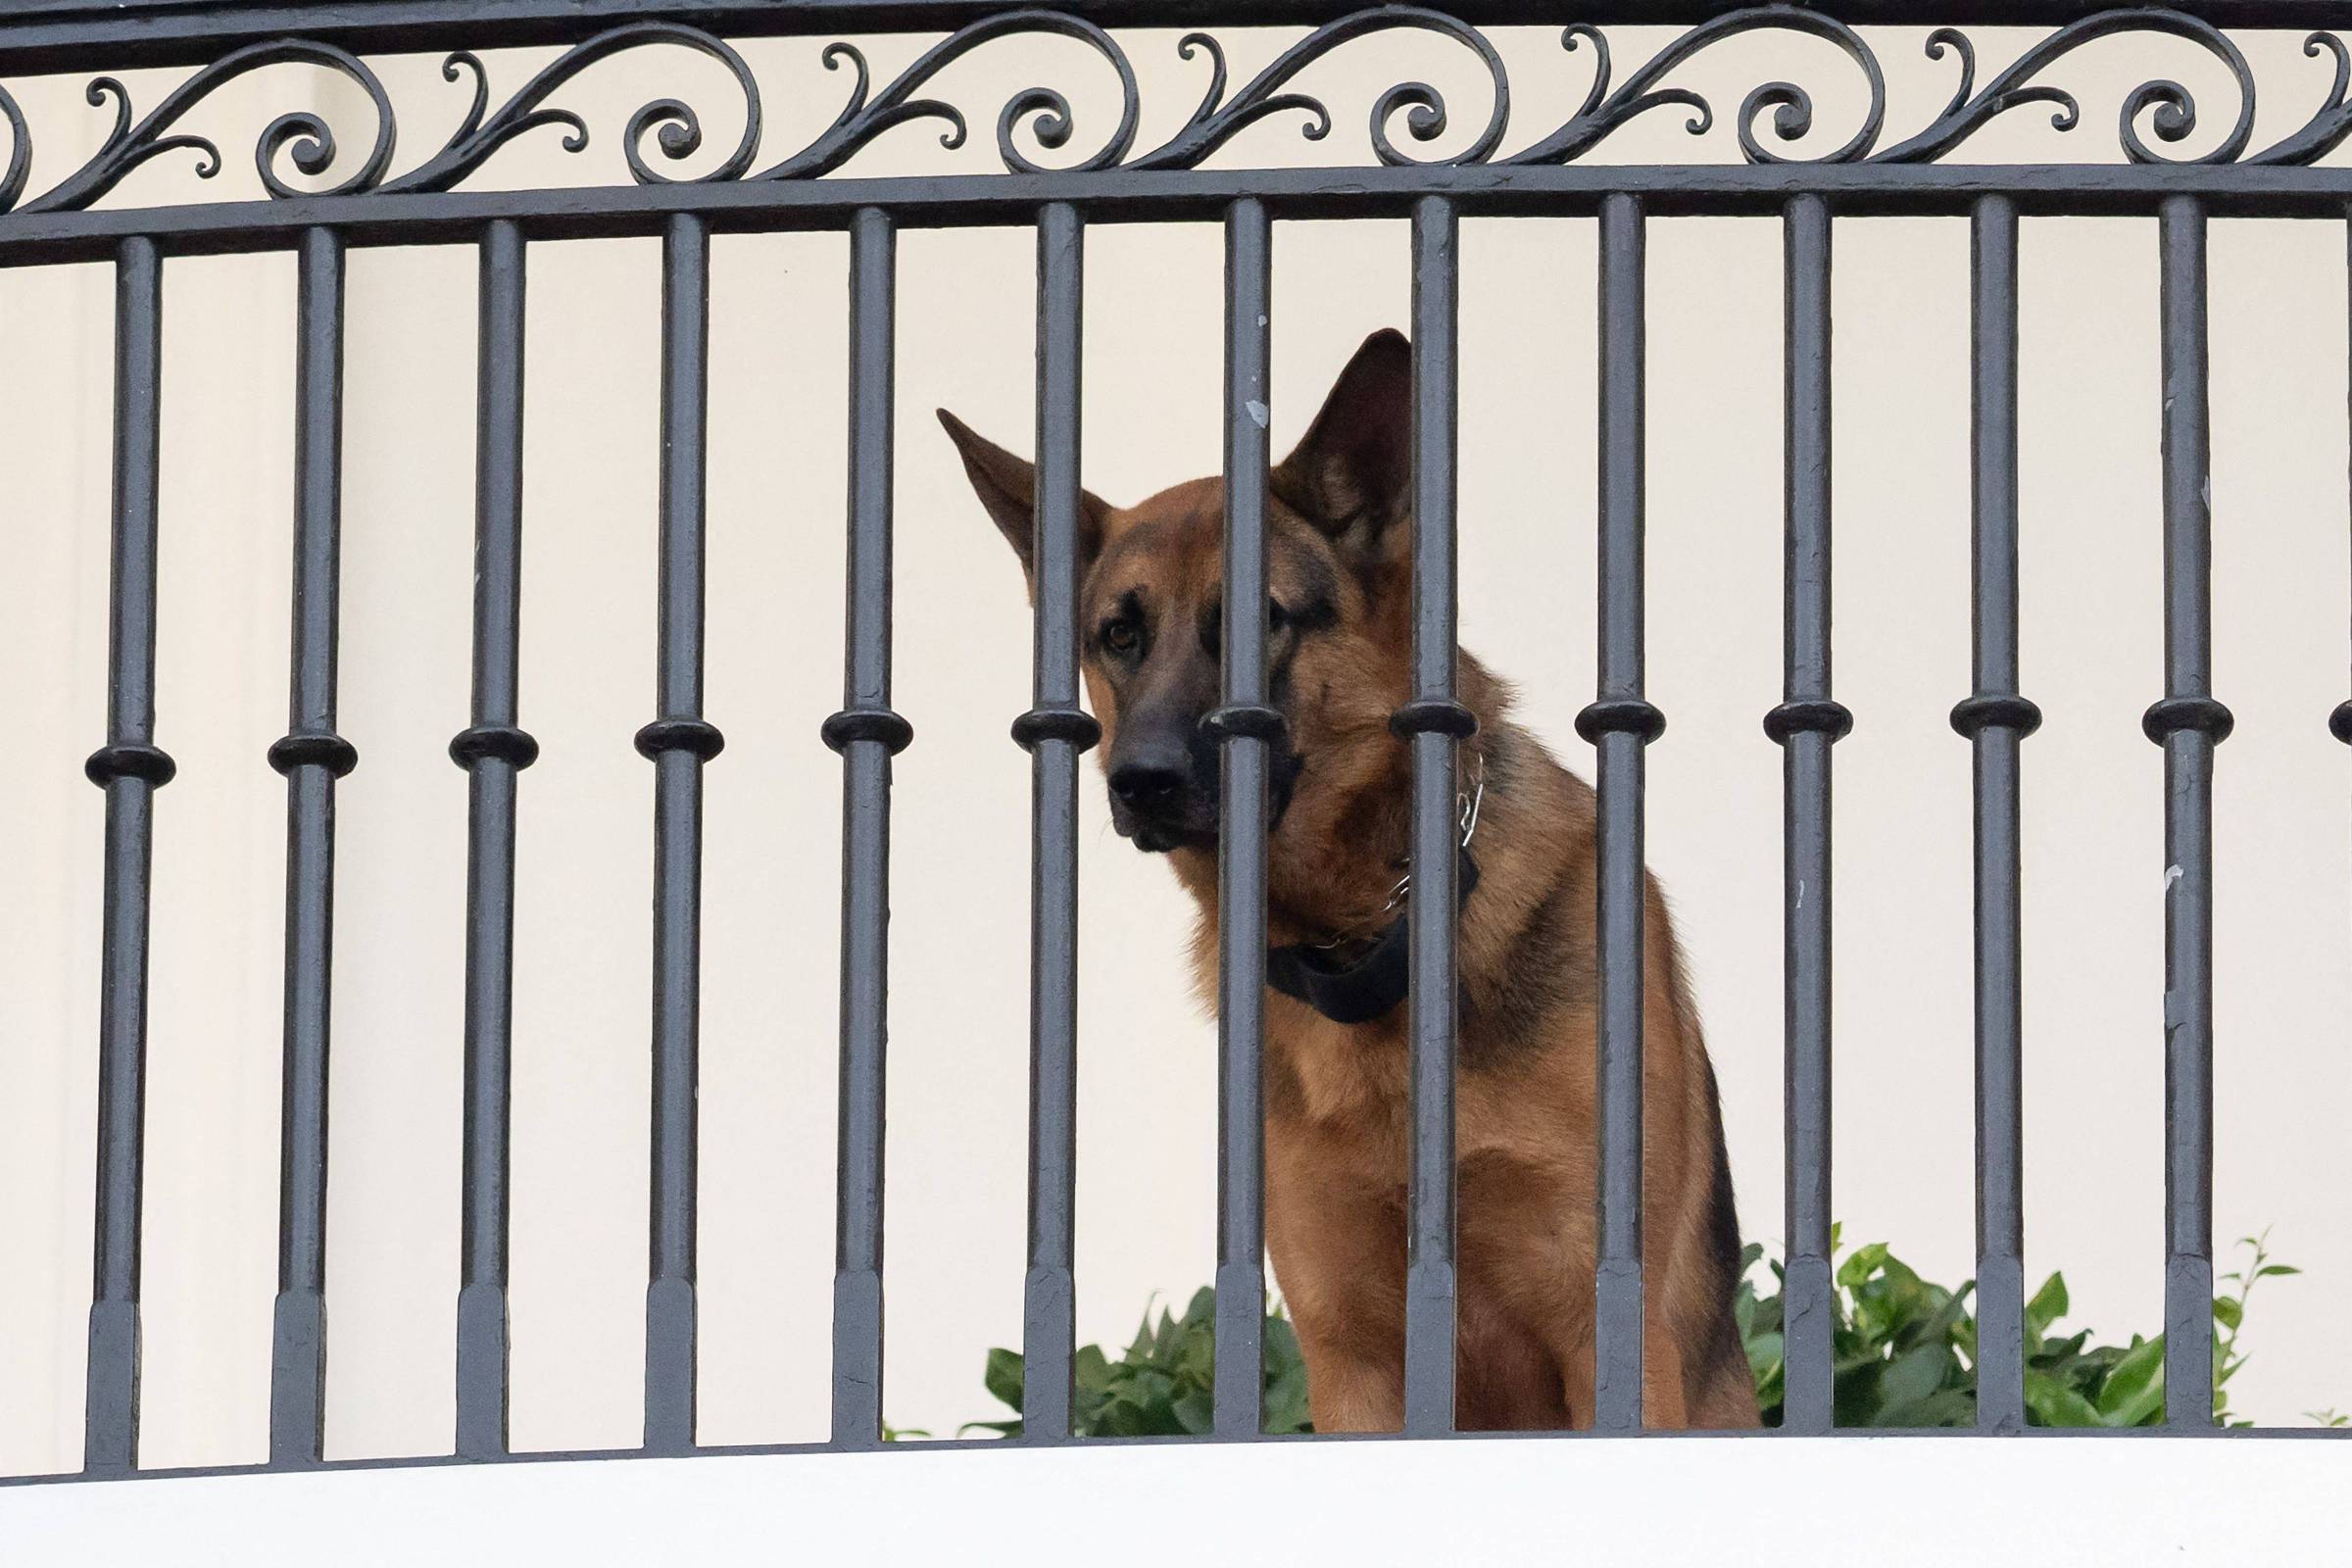 Todos os cachorros do presidente': conheça Champ, Major e outros cães (e  gatos) da Casa Branca - BBC News Brasil